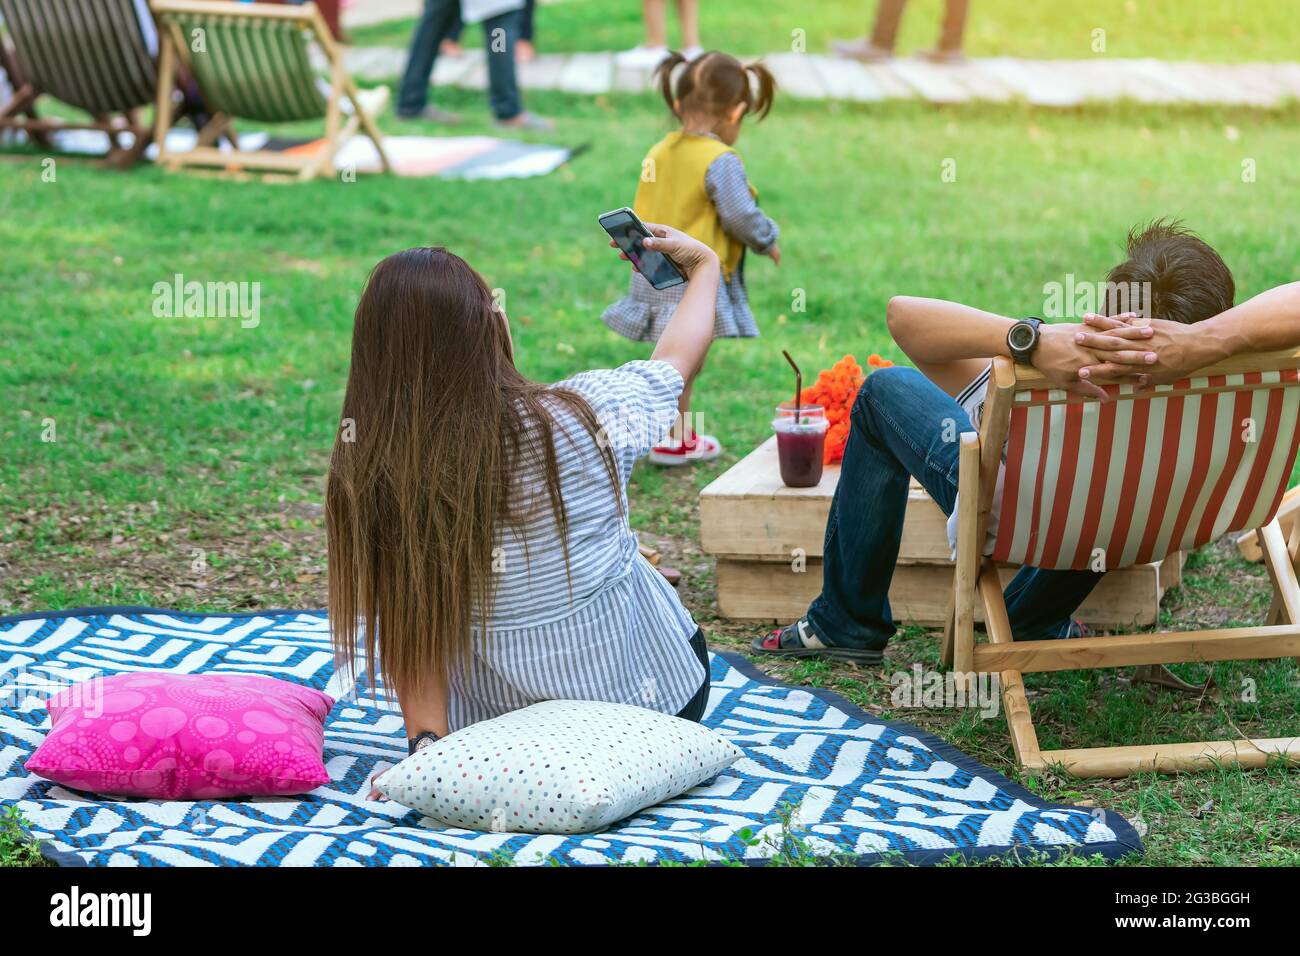 Vue arrière d'une femme asiatique s'assoir pour prendre le selfie sur le  tapis près de son amant sur la chaise de pont dans le jardin. Vacances  d'été dans un cadre verdoyant. Personne